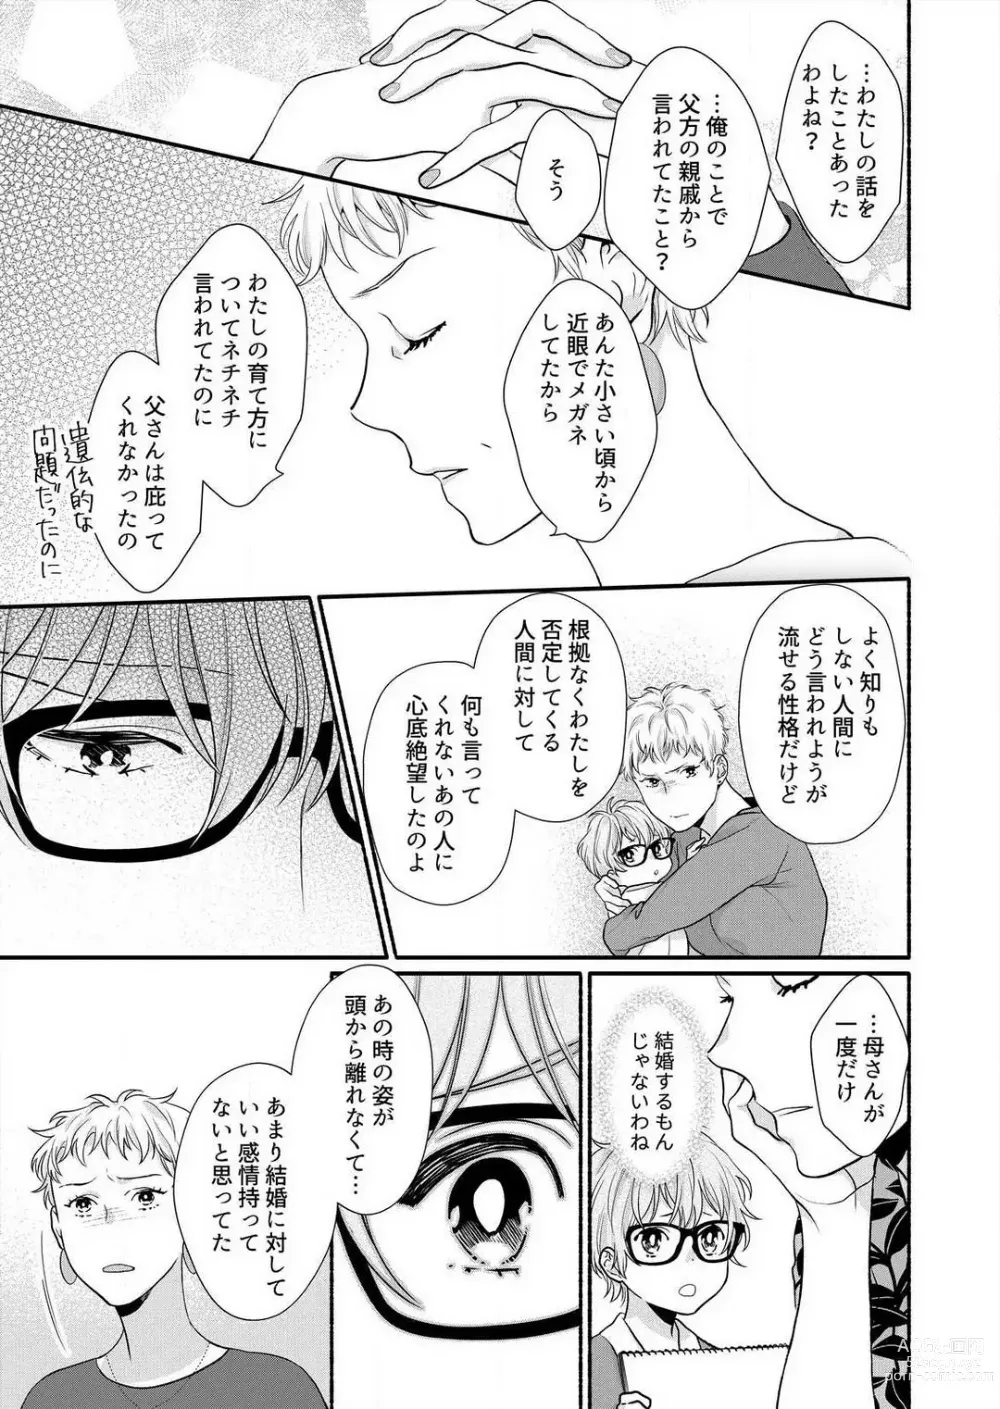 Page 189 of manga Suki Kawaii Guchagucha ni Shitai - Osananajimi wa Kojirase Sugiteru 1-8